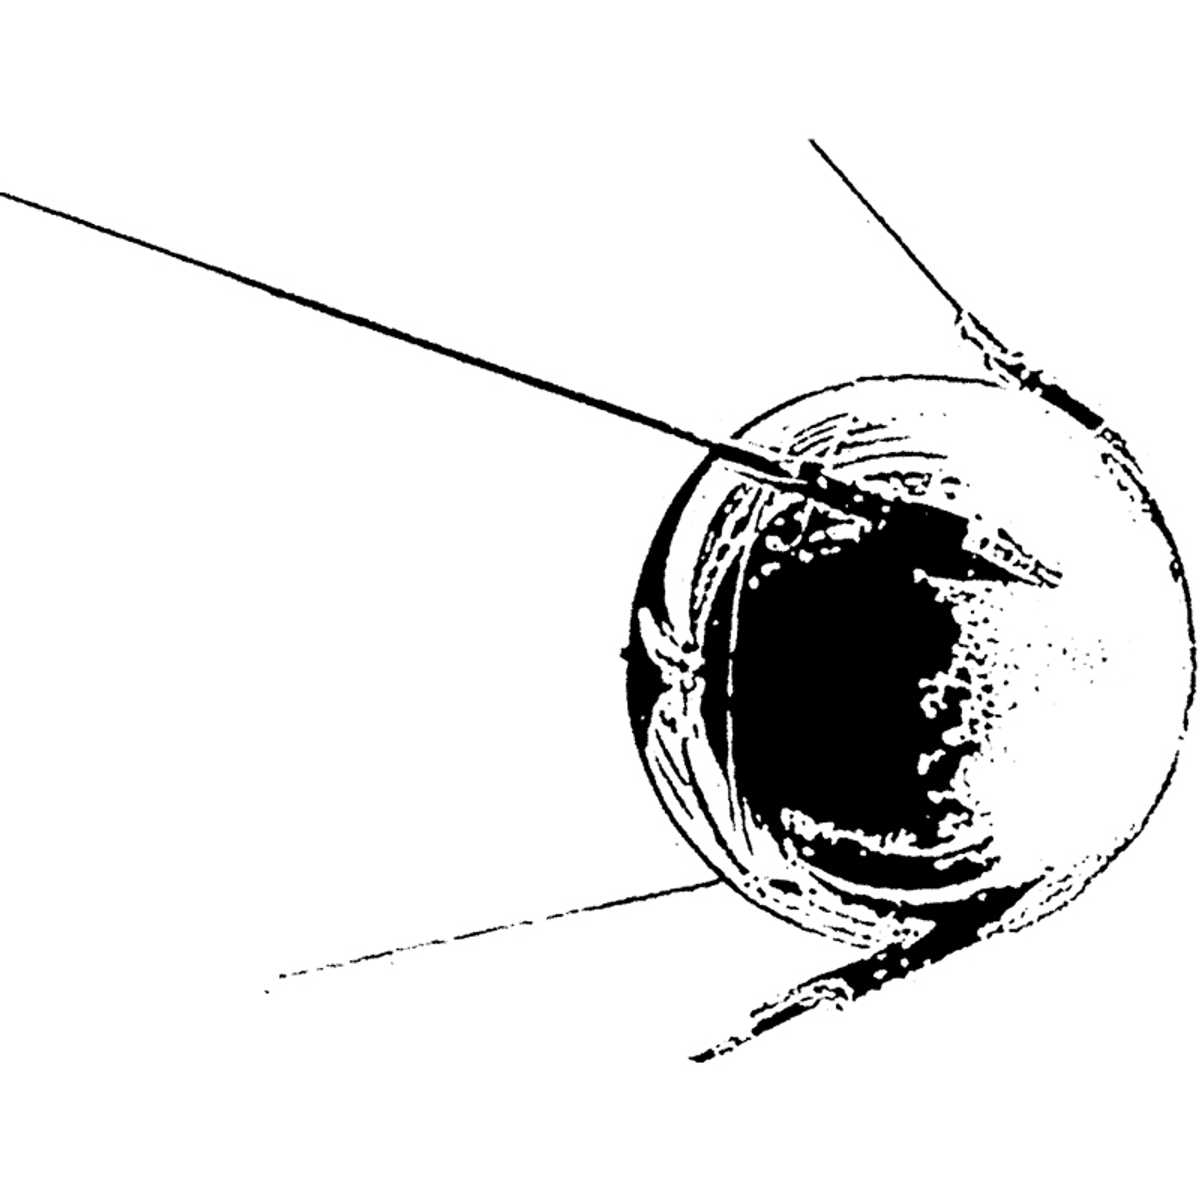 1957, Spoutnik